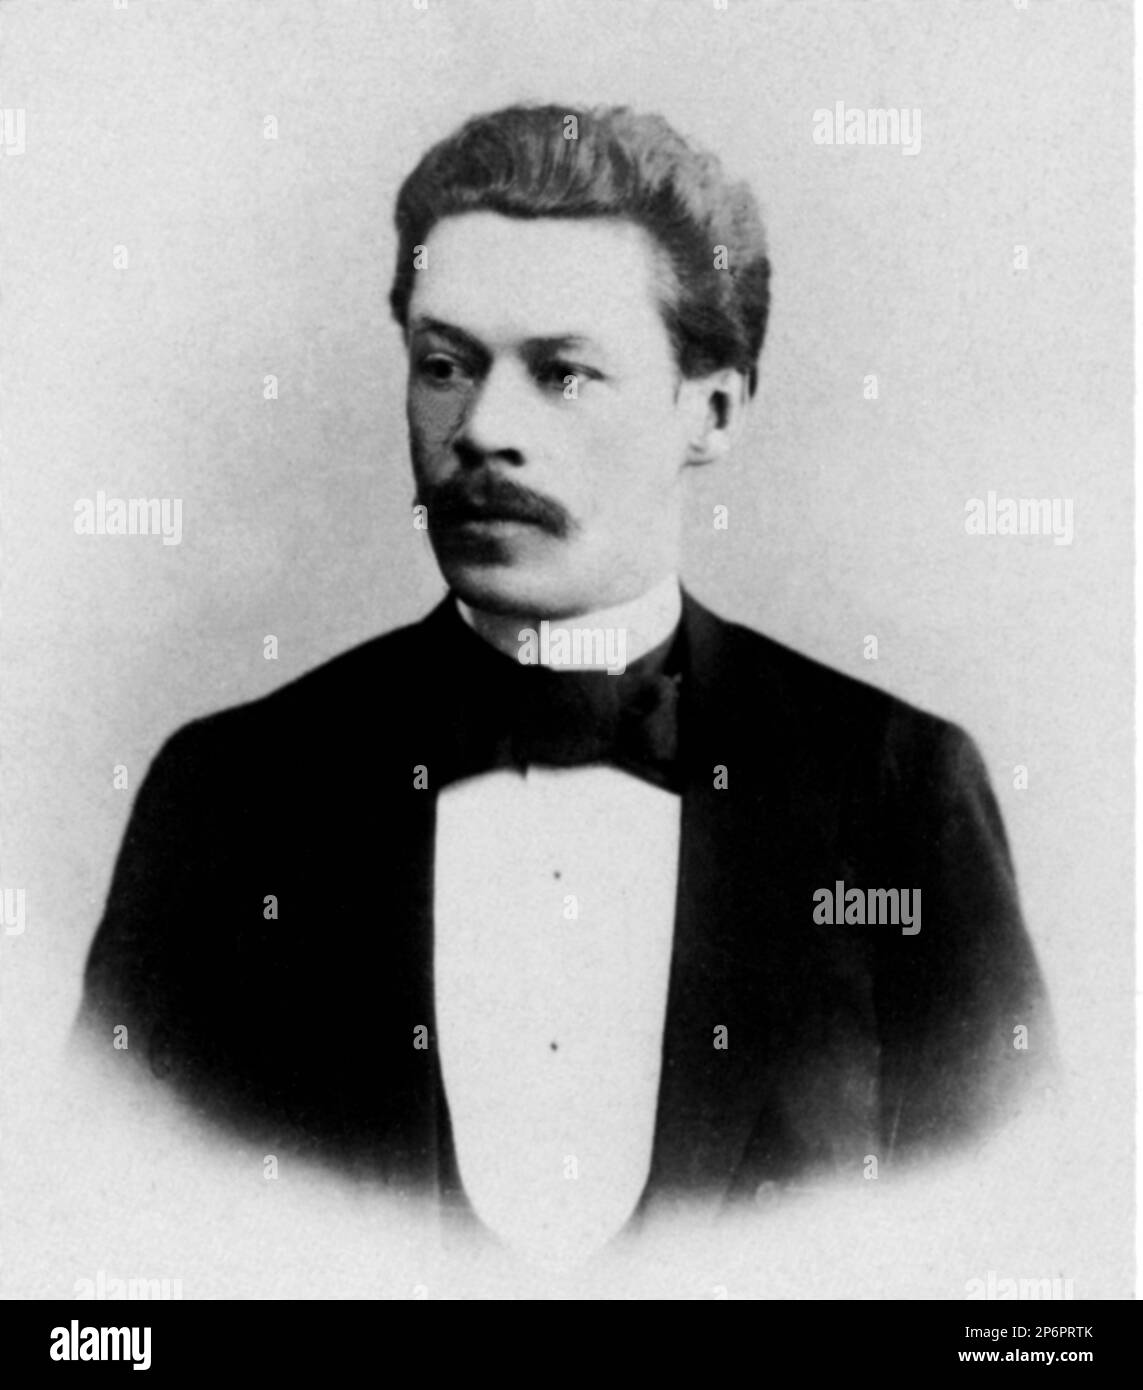 1930 c, RUSSIA : il compositore russo ANTON ARENSKY ( 1861 - 1906 ) . Scrisse opere modellate su quelle di Tchaikovsky e opere da camera molto popolari . Foto D.S. Zdobnova , St. Pietroburgo . - DIRETTORE D' ORCHESTRA - COMPOSITORE - OPERA LIRICA - CLASSICA - CLASSICA - RITRATTO - RITRATTO - MUSICALE - MUSICA - BAFFI - BAFFI - CRAVATTA - CRAVATTA - ARENSKI -- ARCHIVIO GBB Foto Stock